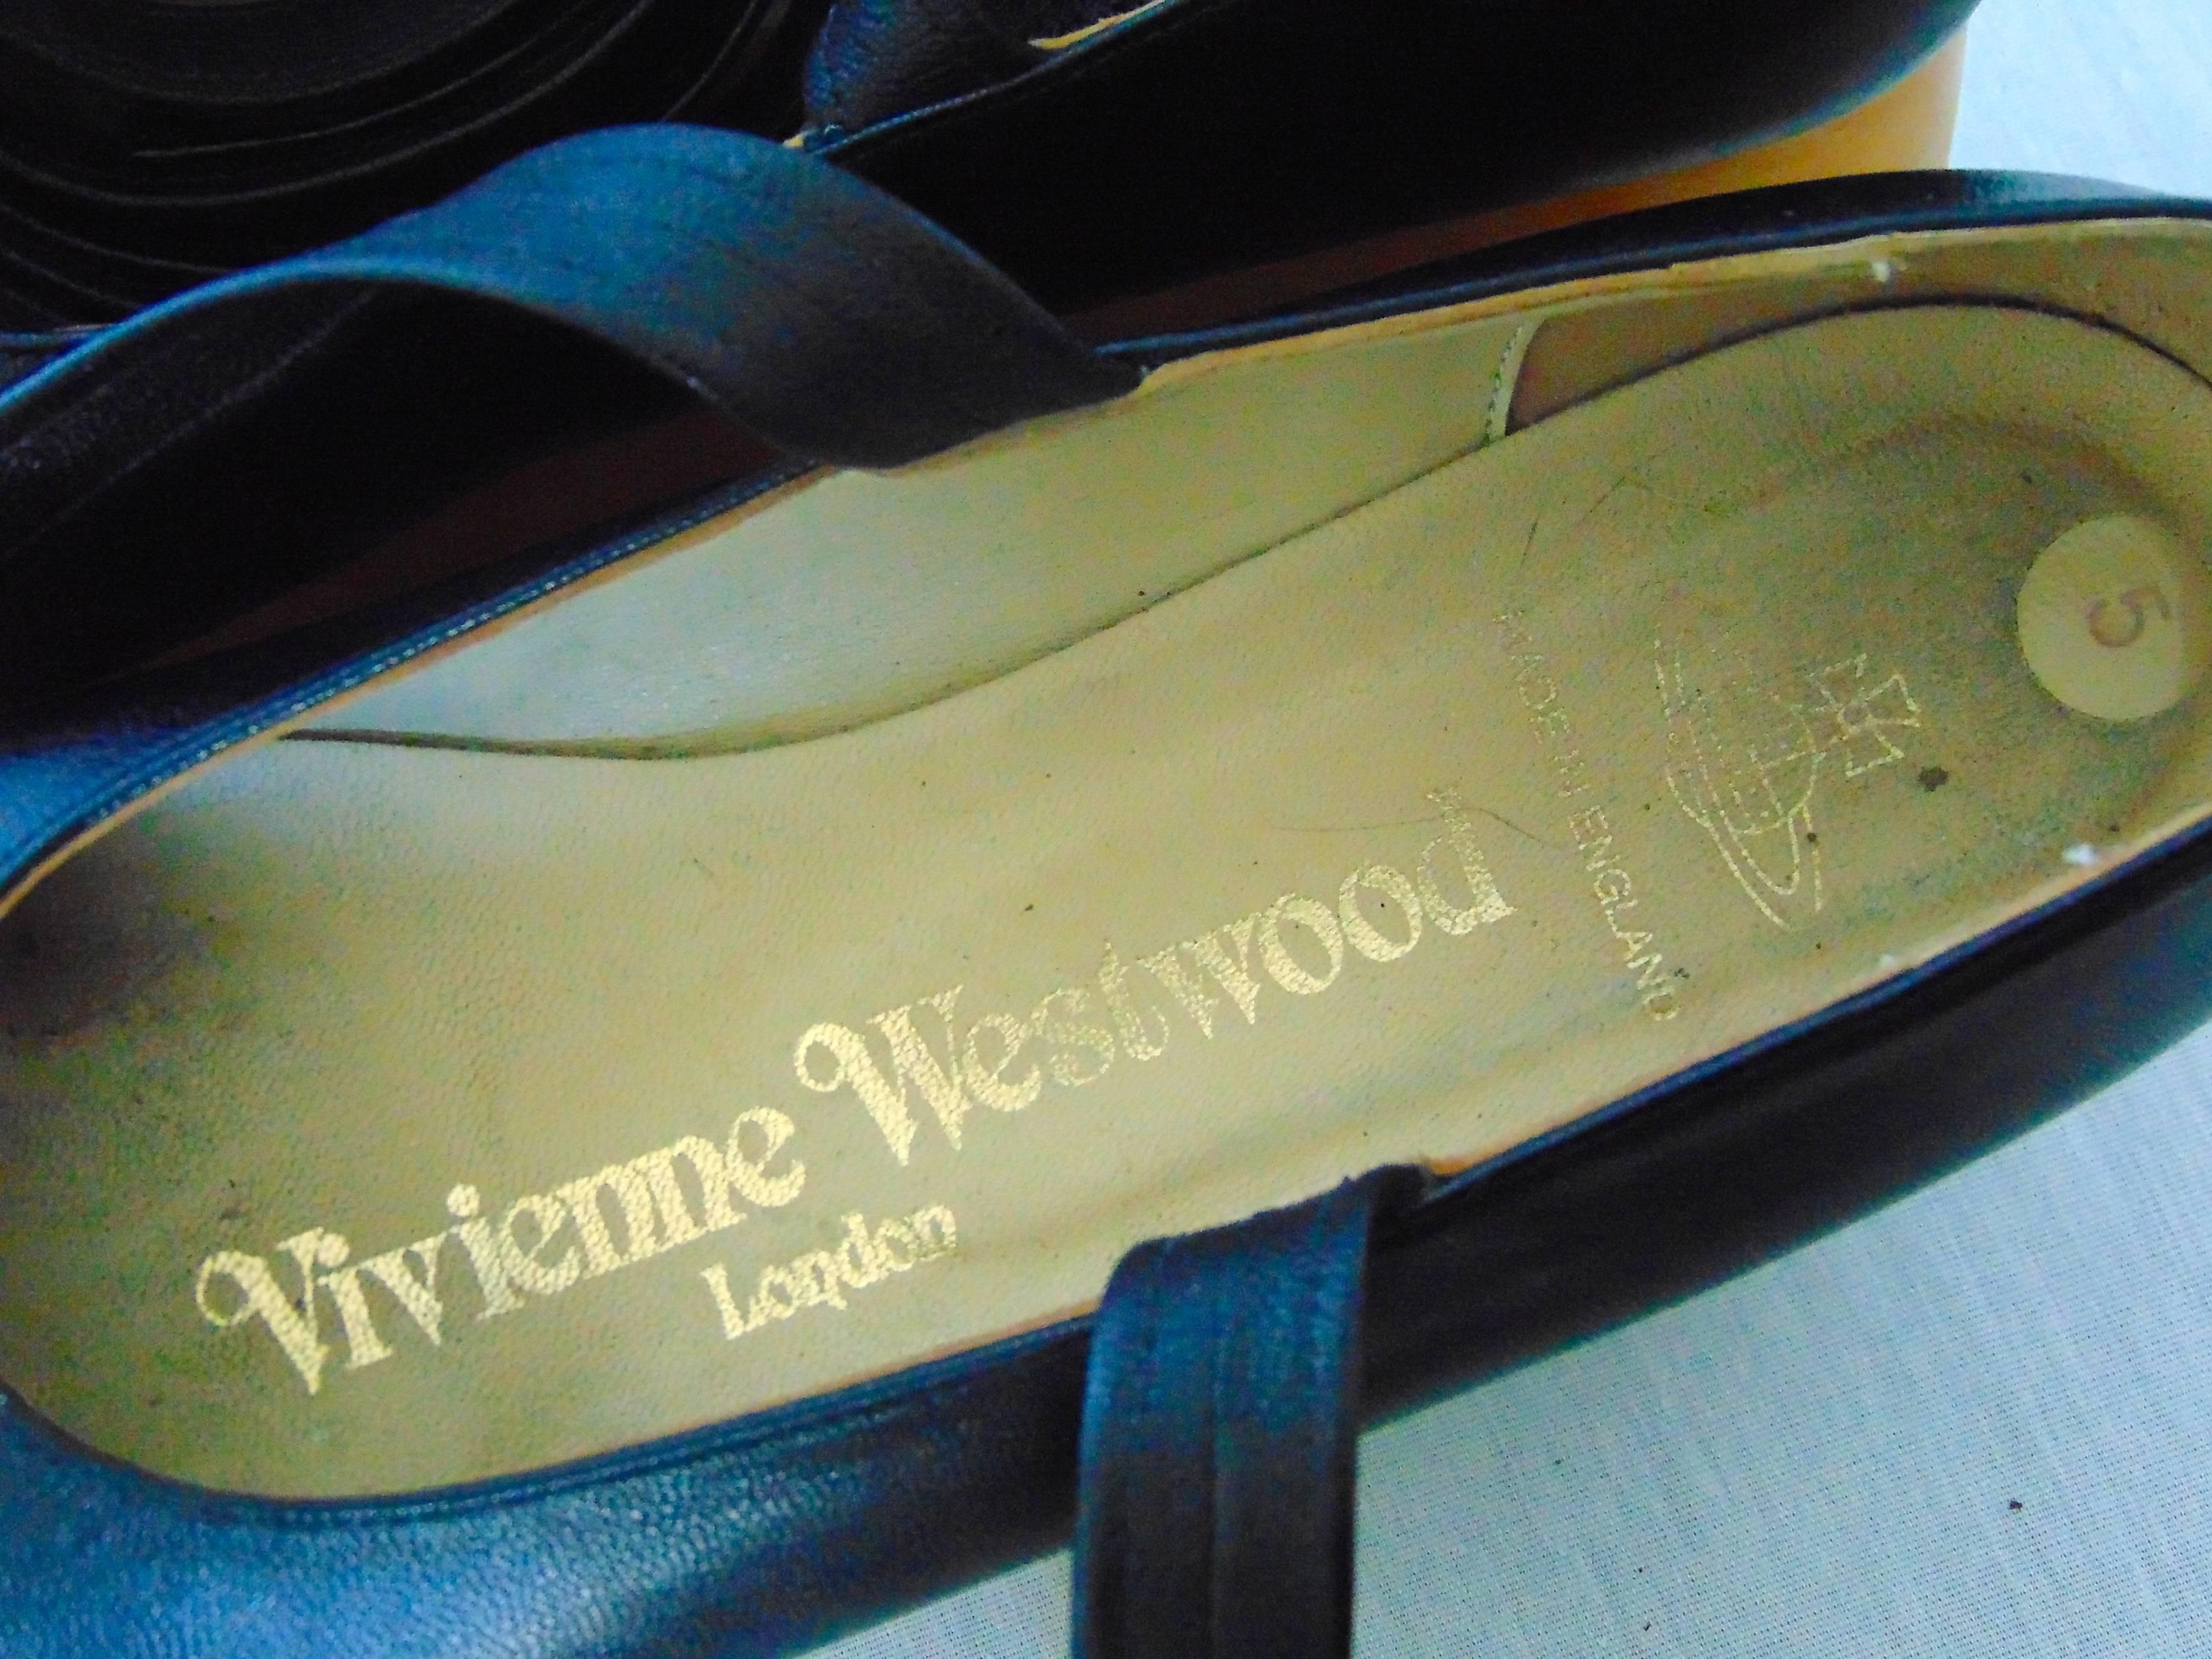 Vivienne Westwood Rocking Horse Shoes Black Leather Ballerina Platforms US6 UK5 2